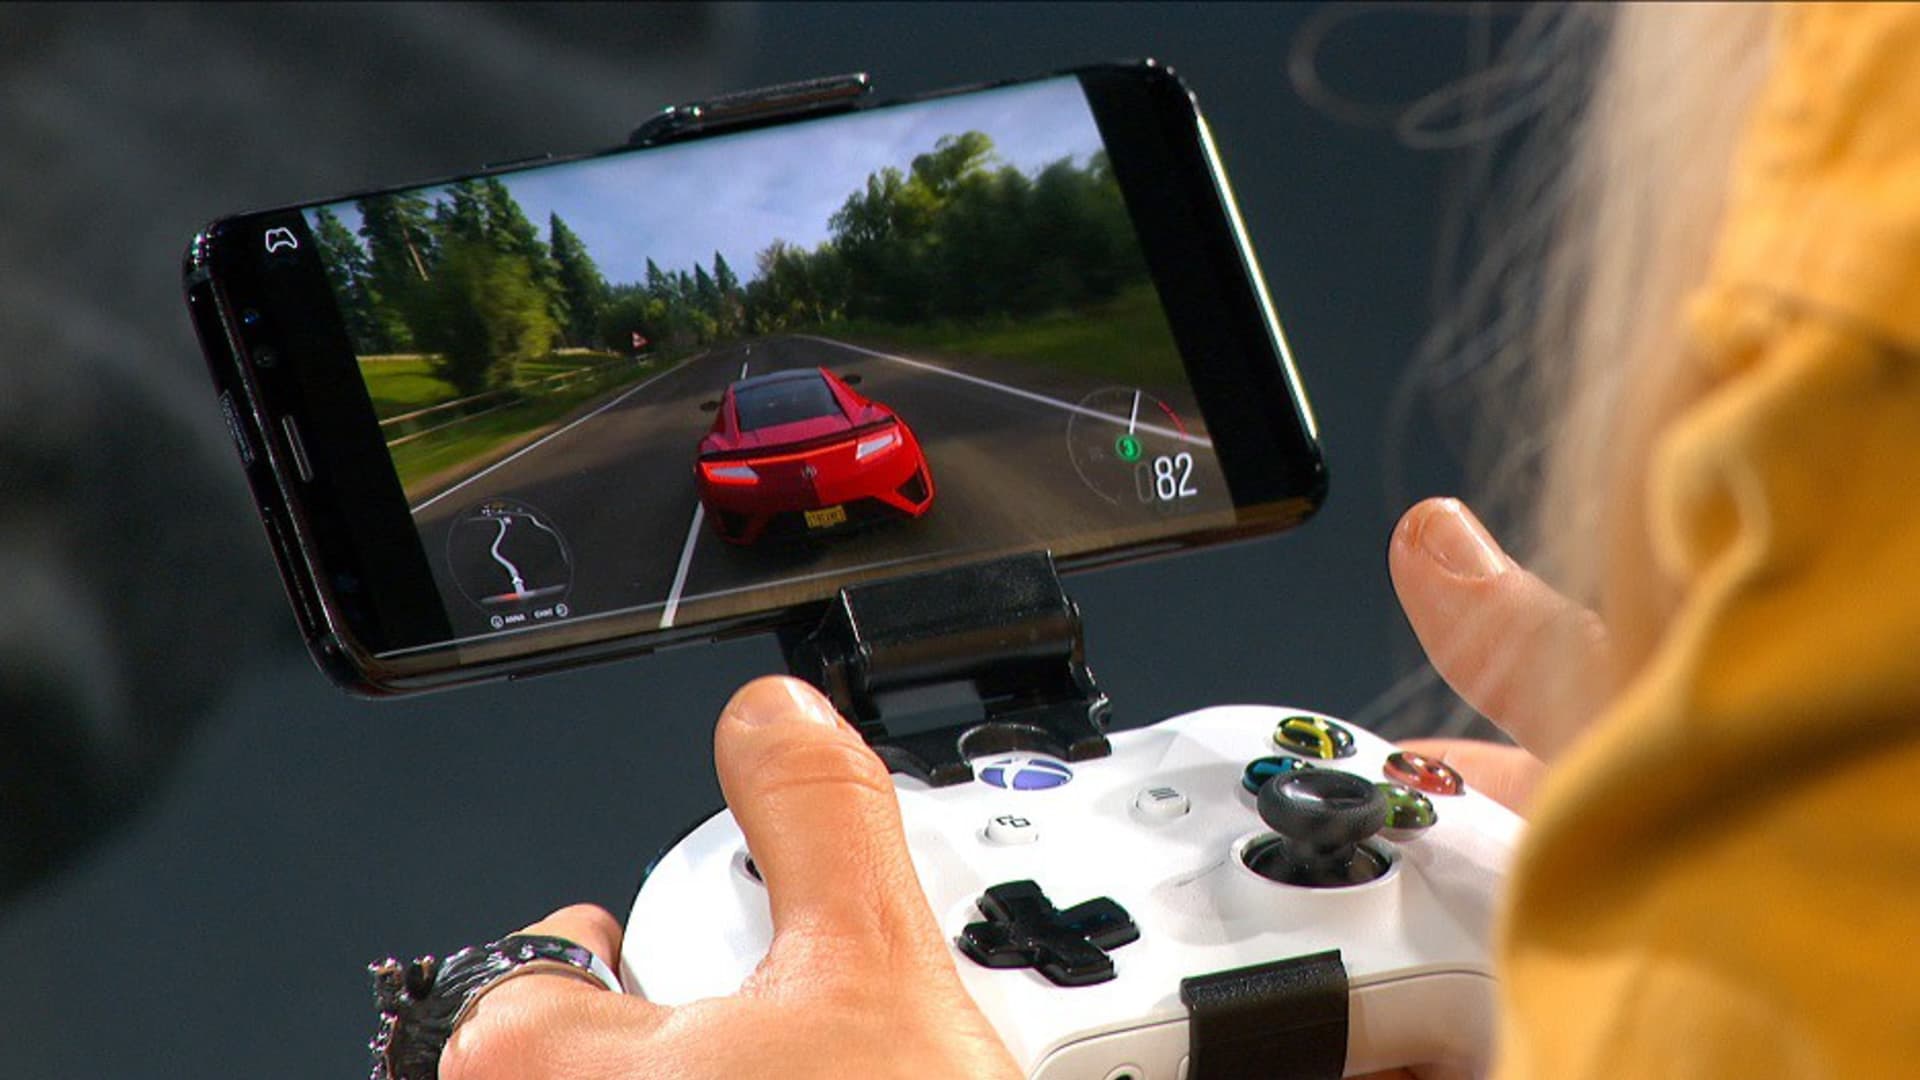 Xbox lança app para jogar na TV sem precisar de console via Cloud Gaming